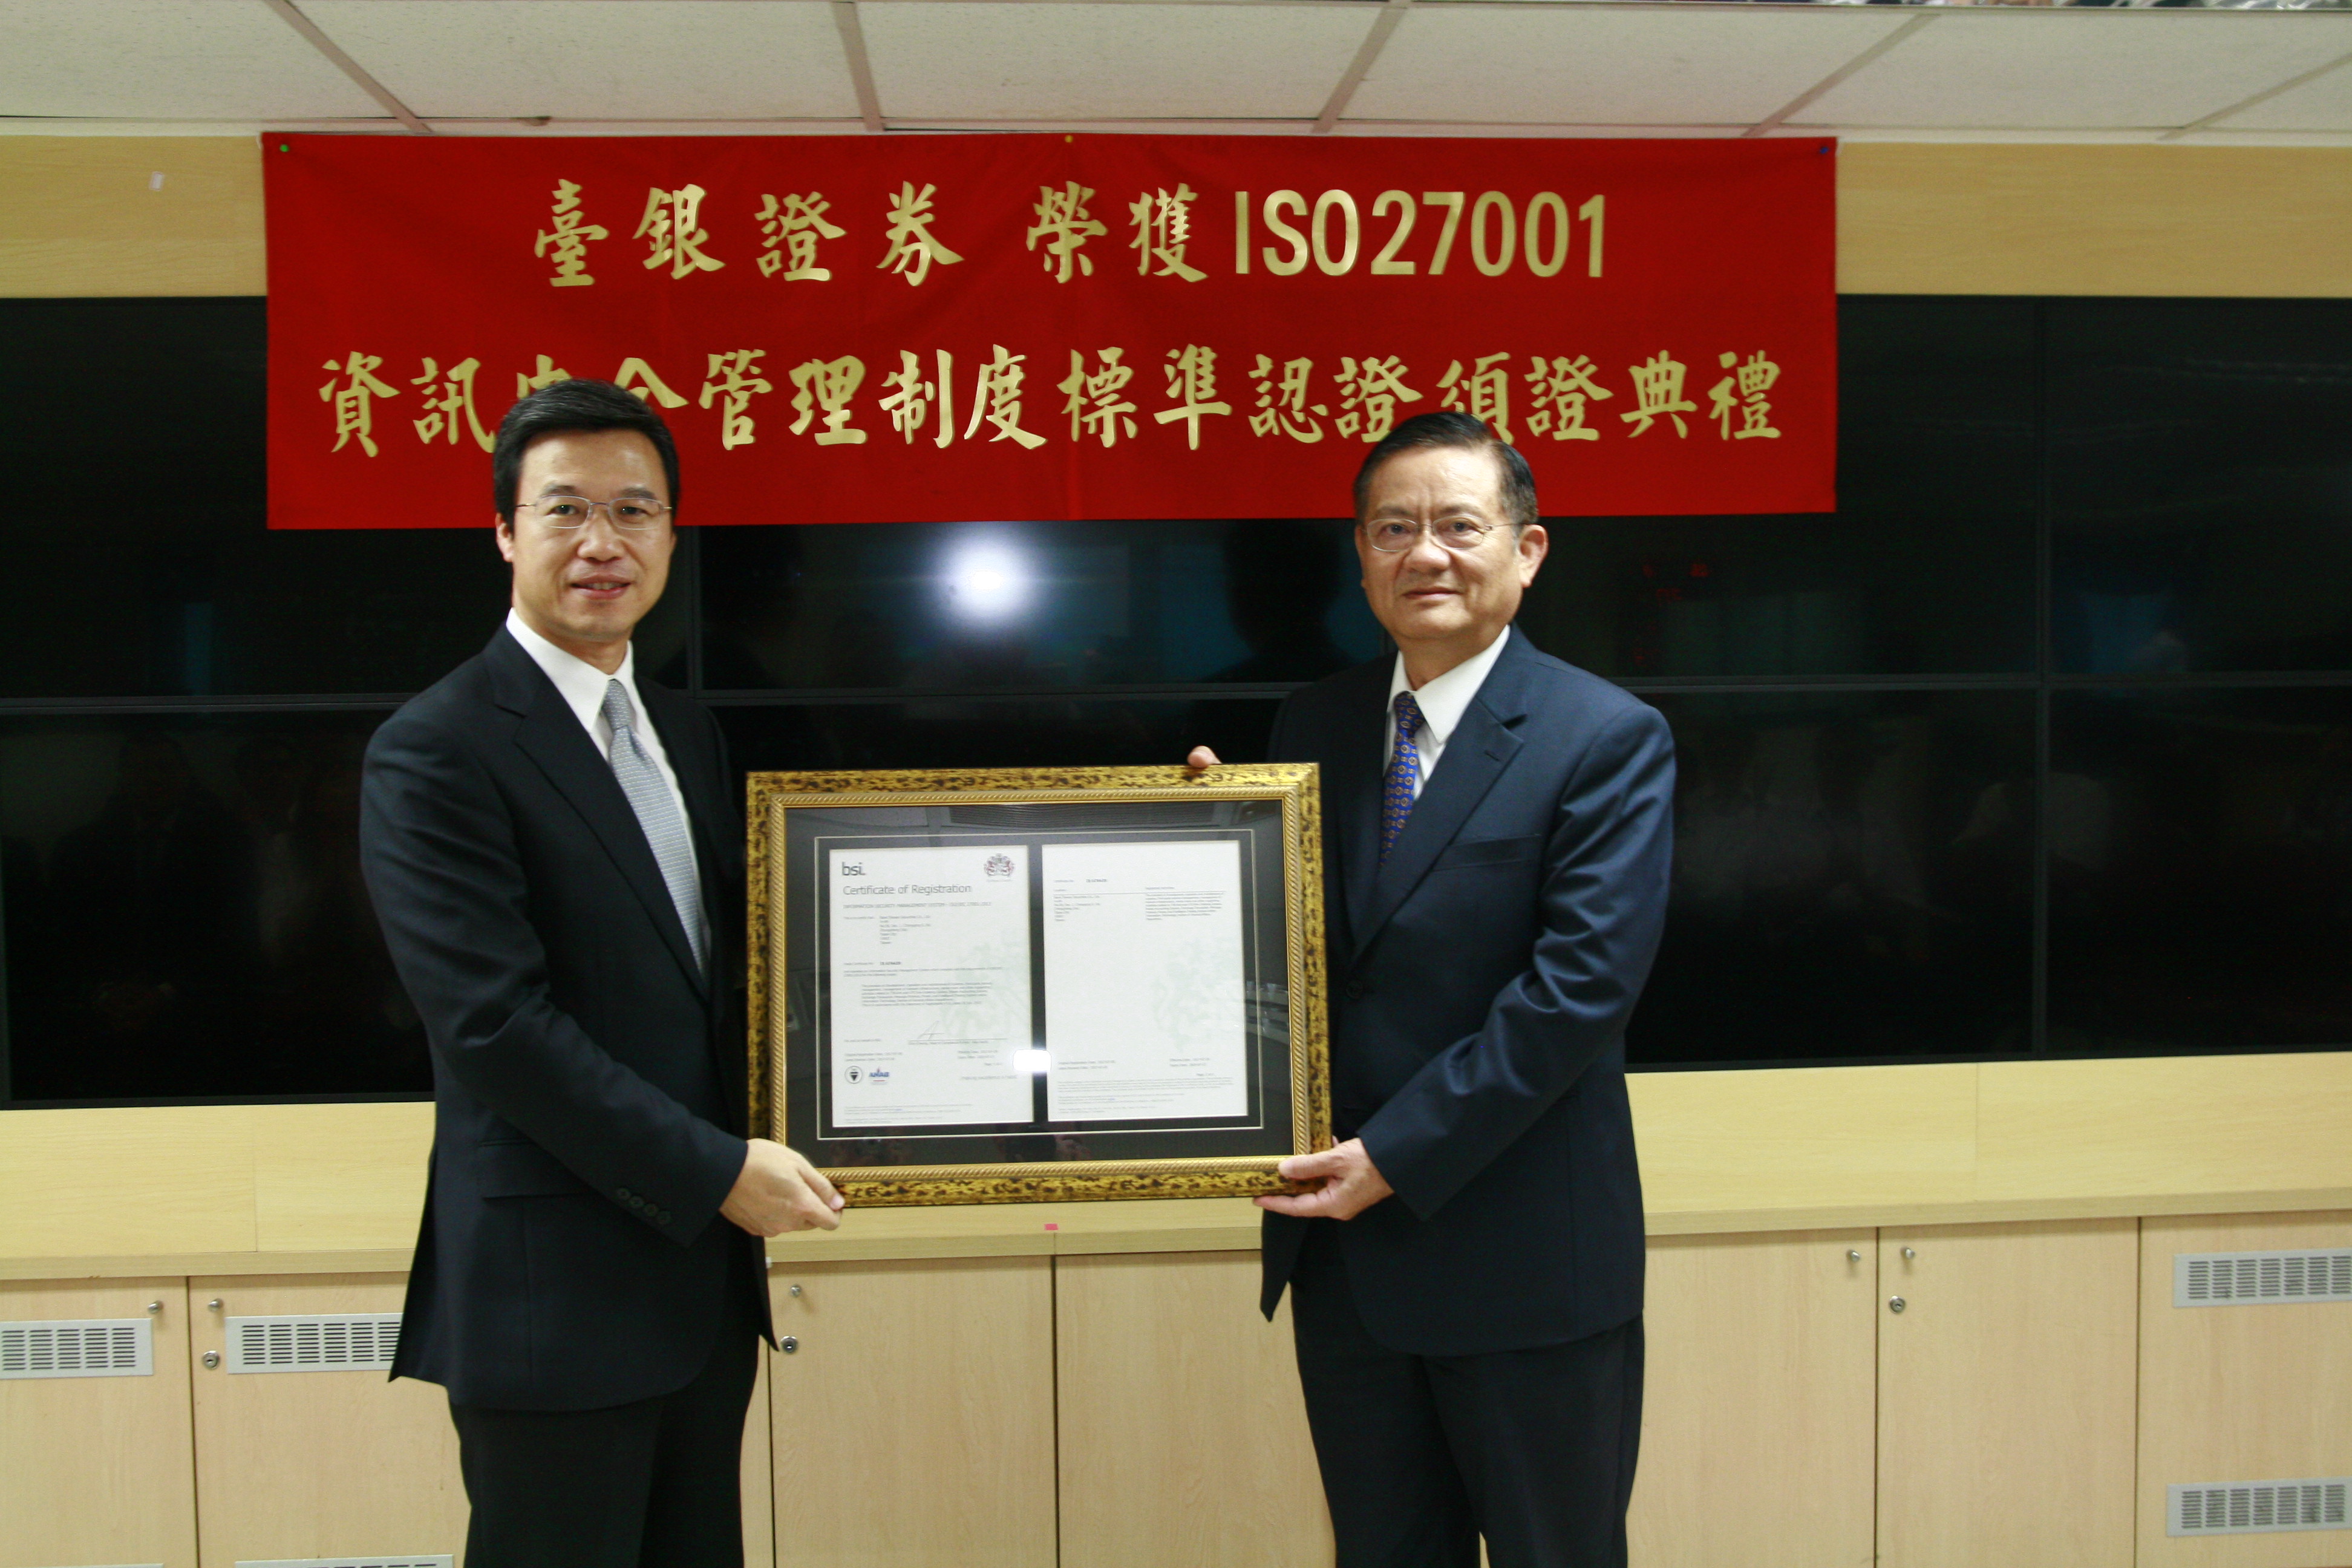 臺銀證券總經理江士田(右)，接受ISO27001驗證單位英國標準協會(簡稱「BSI」)台灣分公司總經理蒲樹盛(左)頒發證書之照片